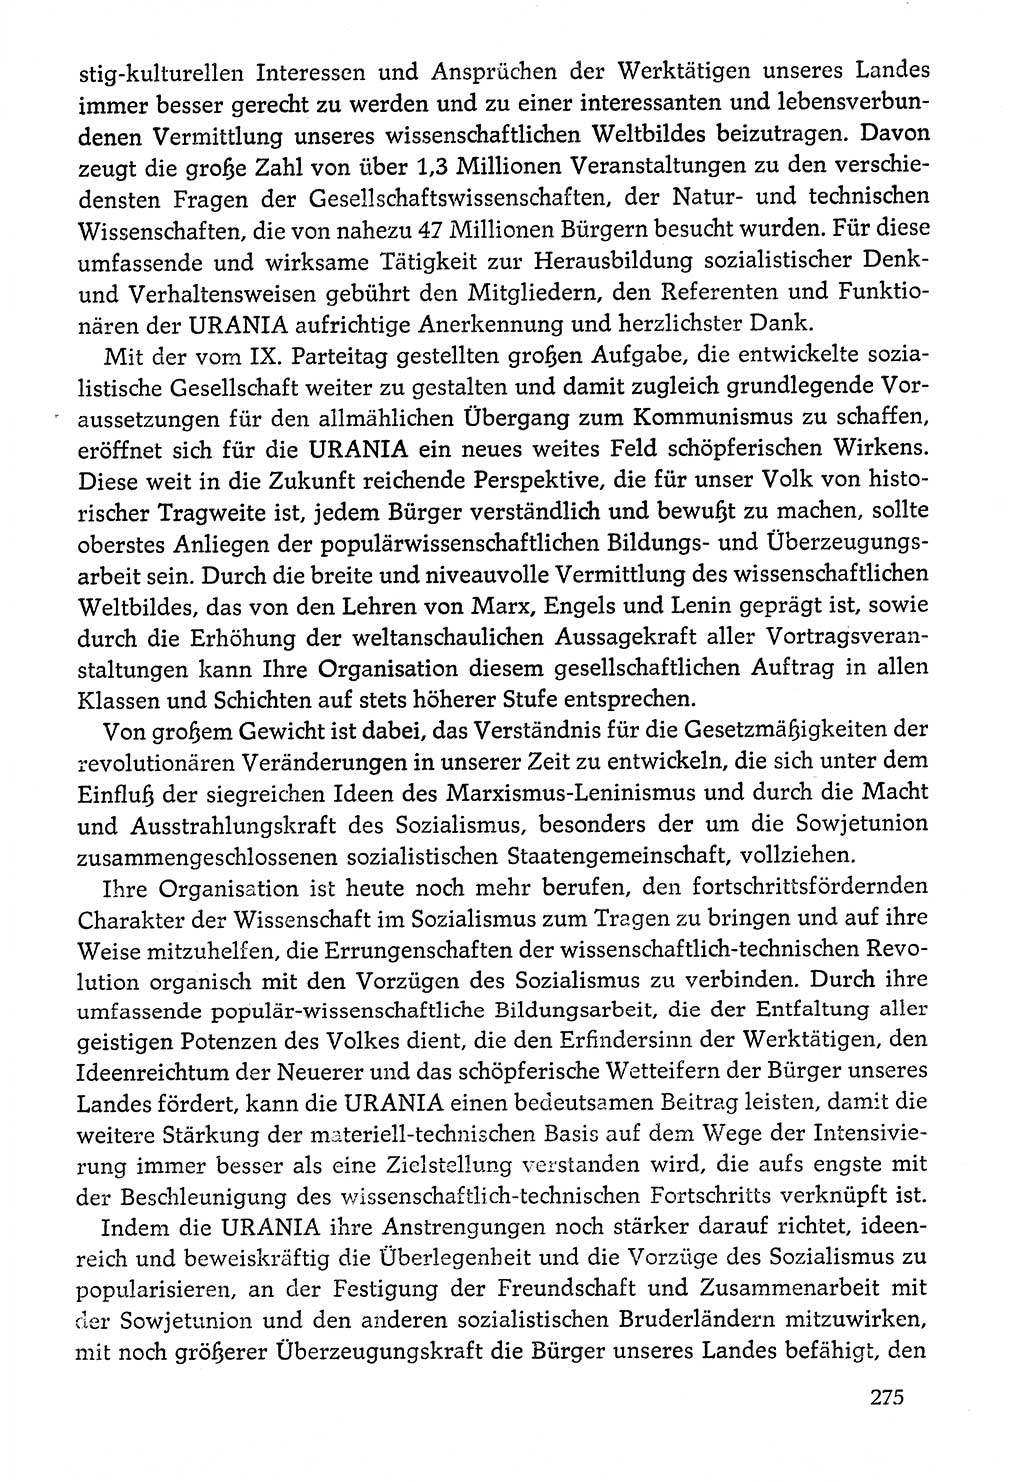 Dokumente der Sozialistischen Einheitspartei Deutschlands (SED) [Deutsche Demokratische Republik (DDR)] 1976-1977, Seite 275 (Dok. SED DDR 1976-1977, S. 275)